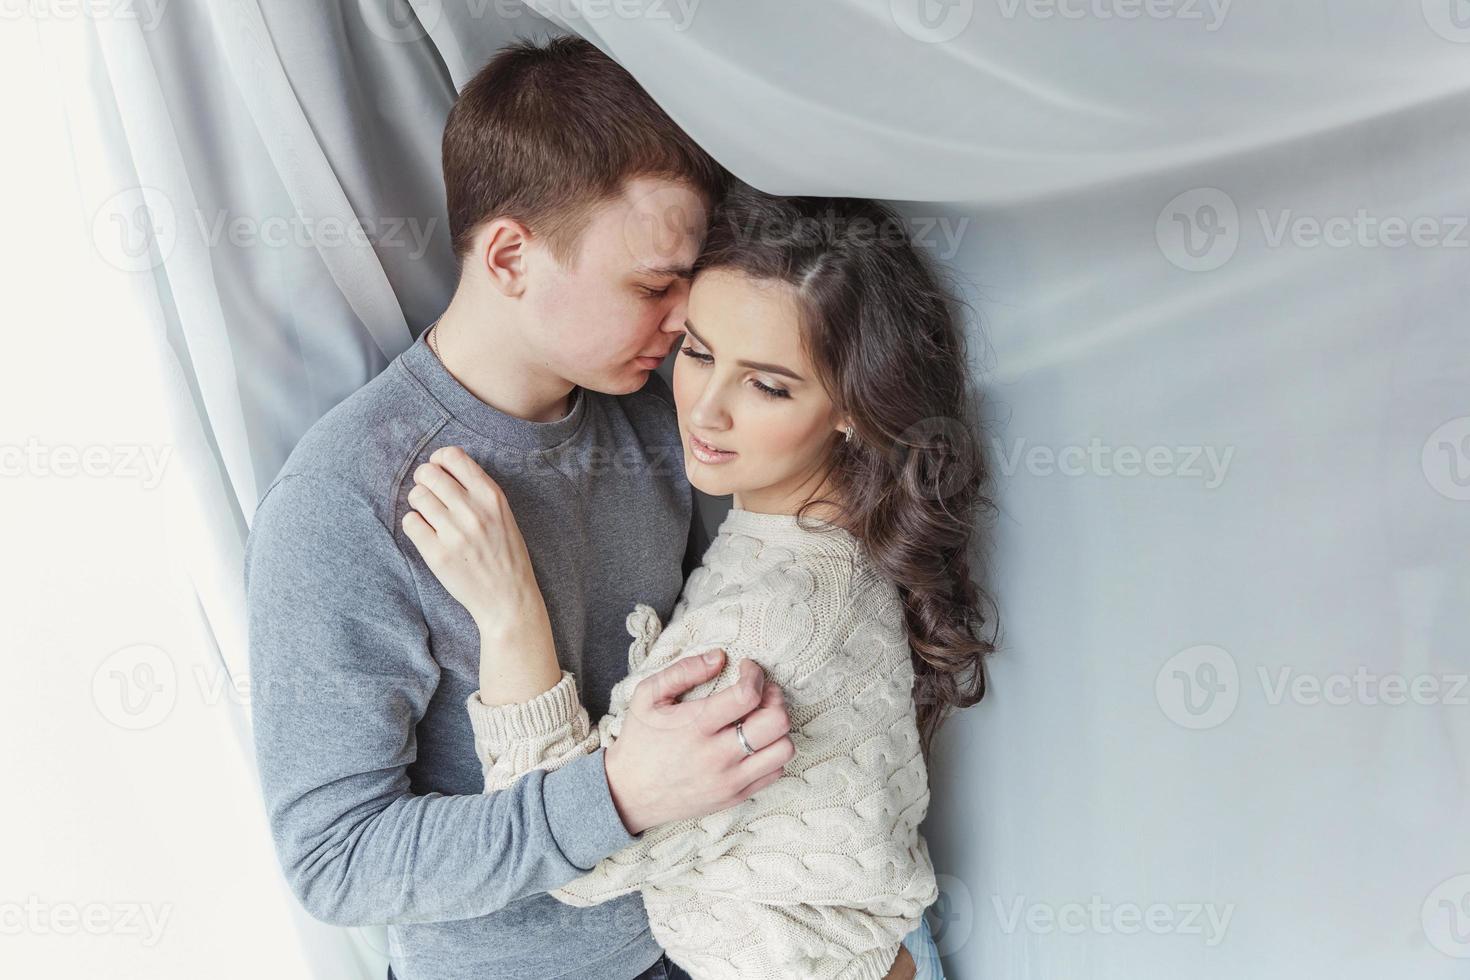 pareja sexy romántica enamorada pasando un buen rato juntos. mujer joven abrazando a su novio, fondo blanco foto